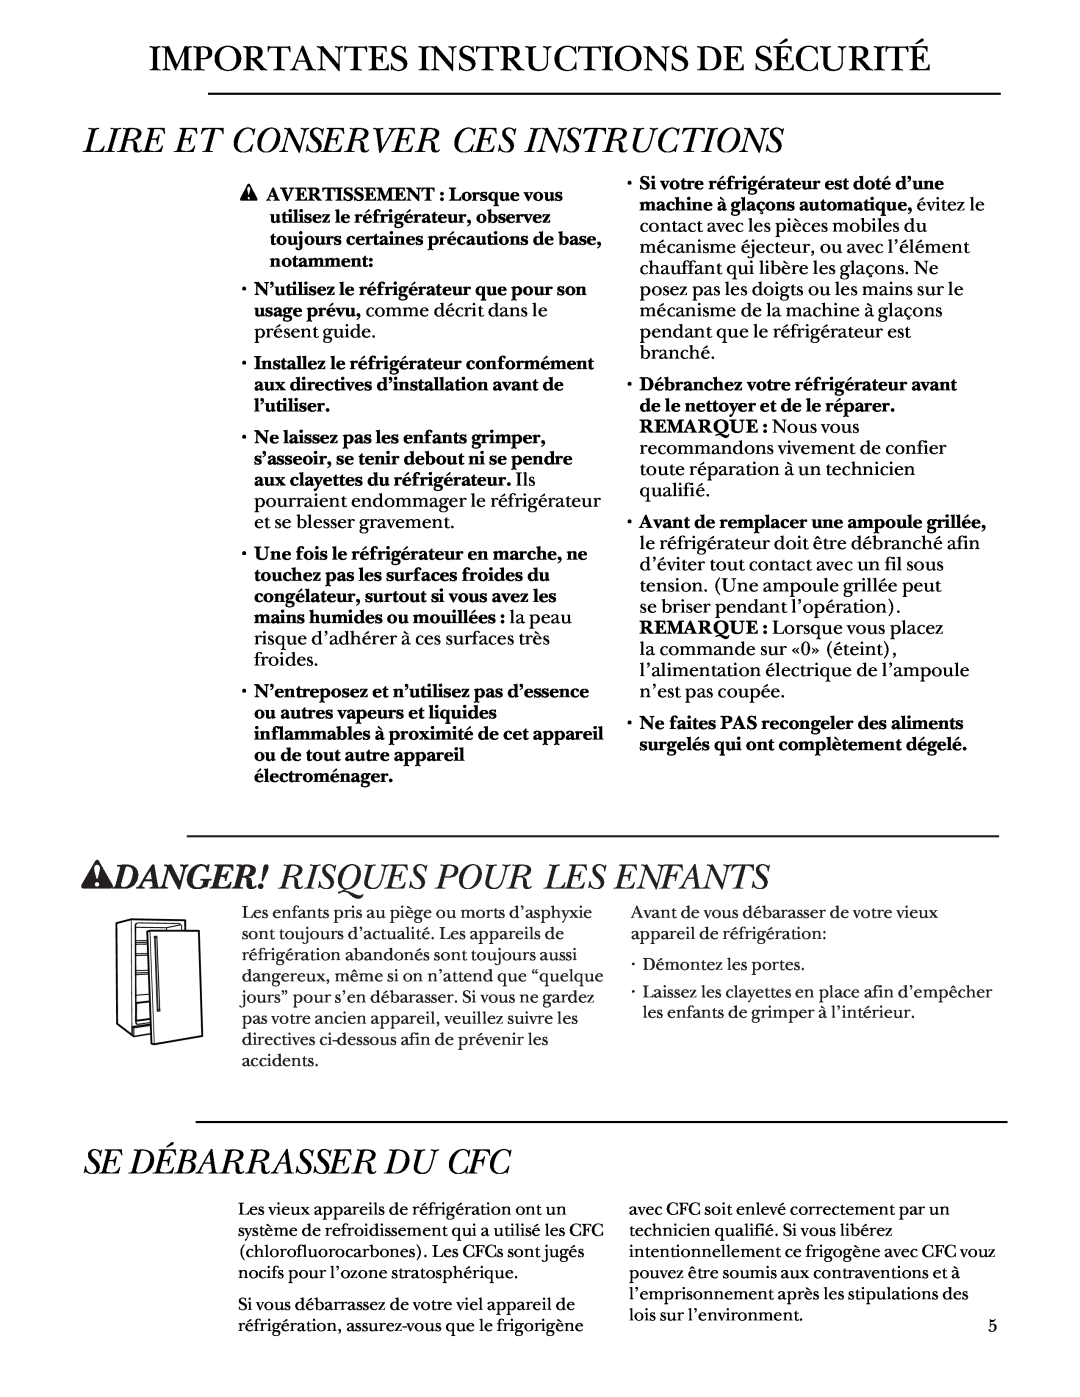 GE Monogram 48 Built-In Refrigerators manual wDANGER! RISQUES POUR LES ENFANTS, Se Débarrasser Du Cfc 